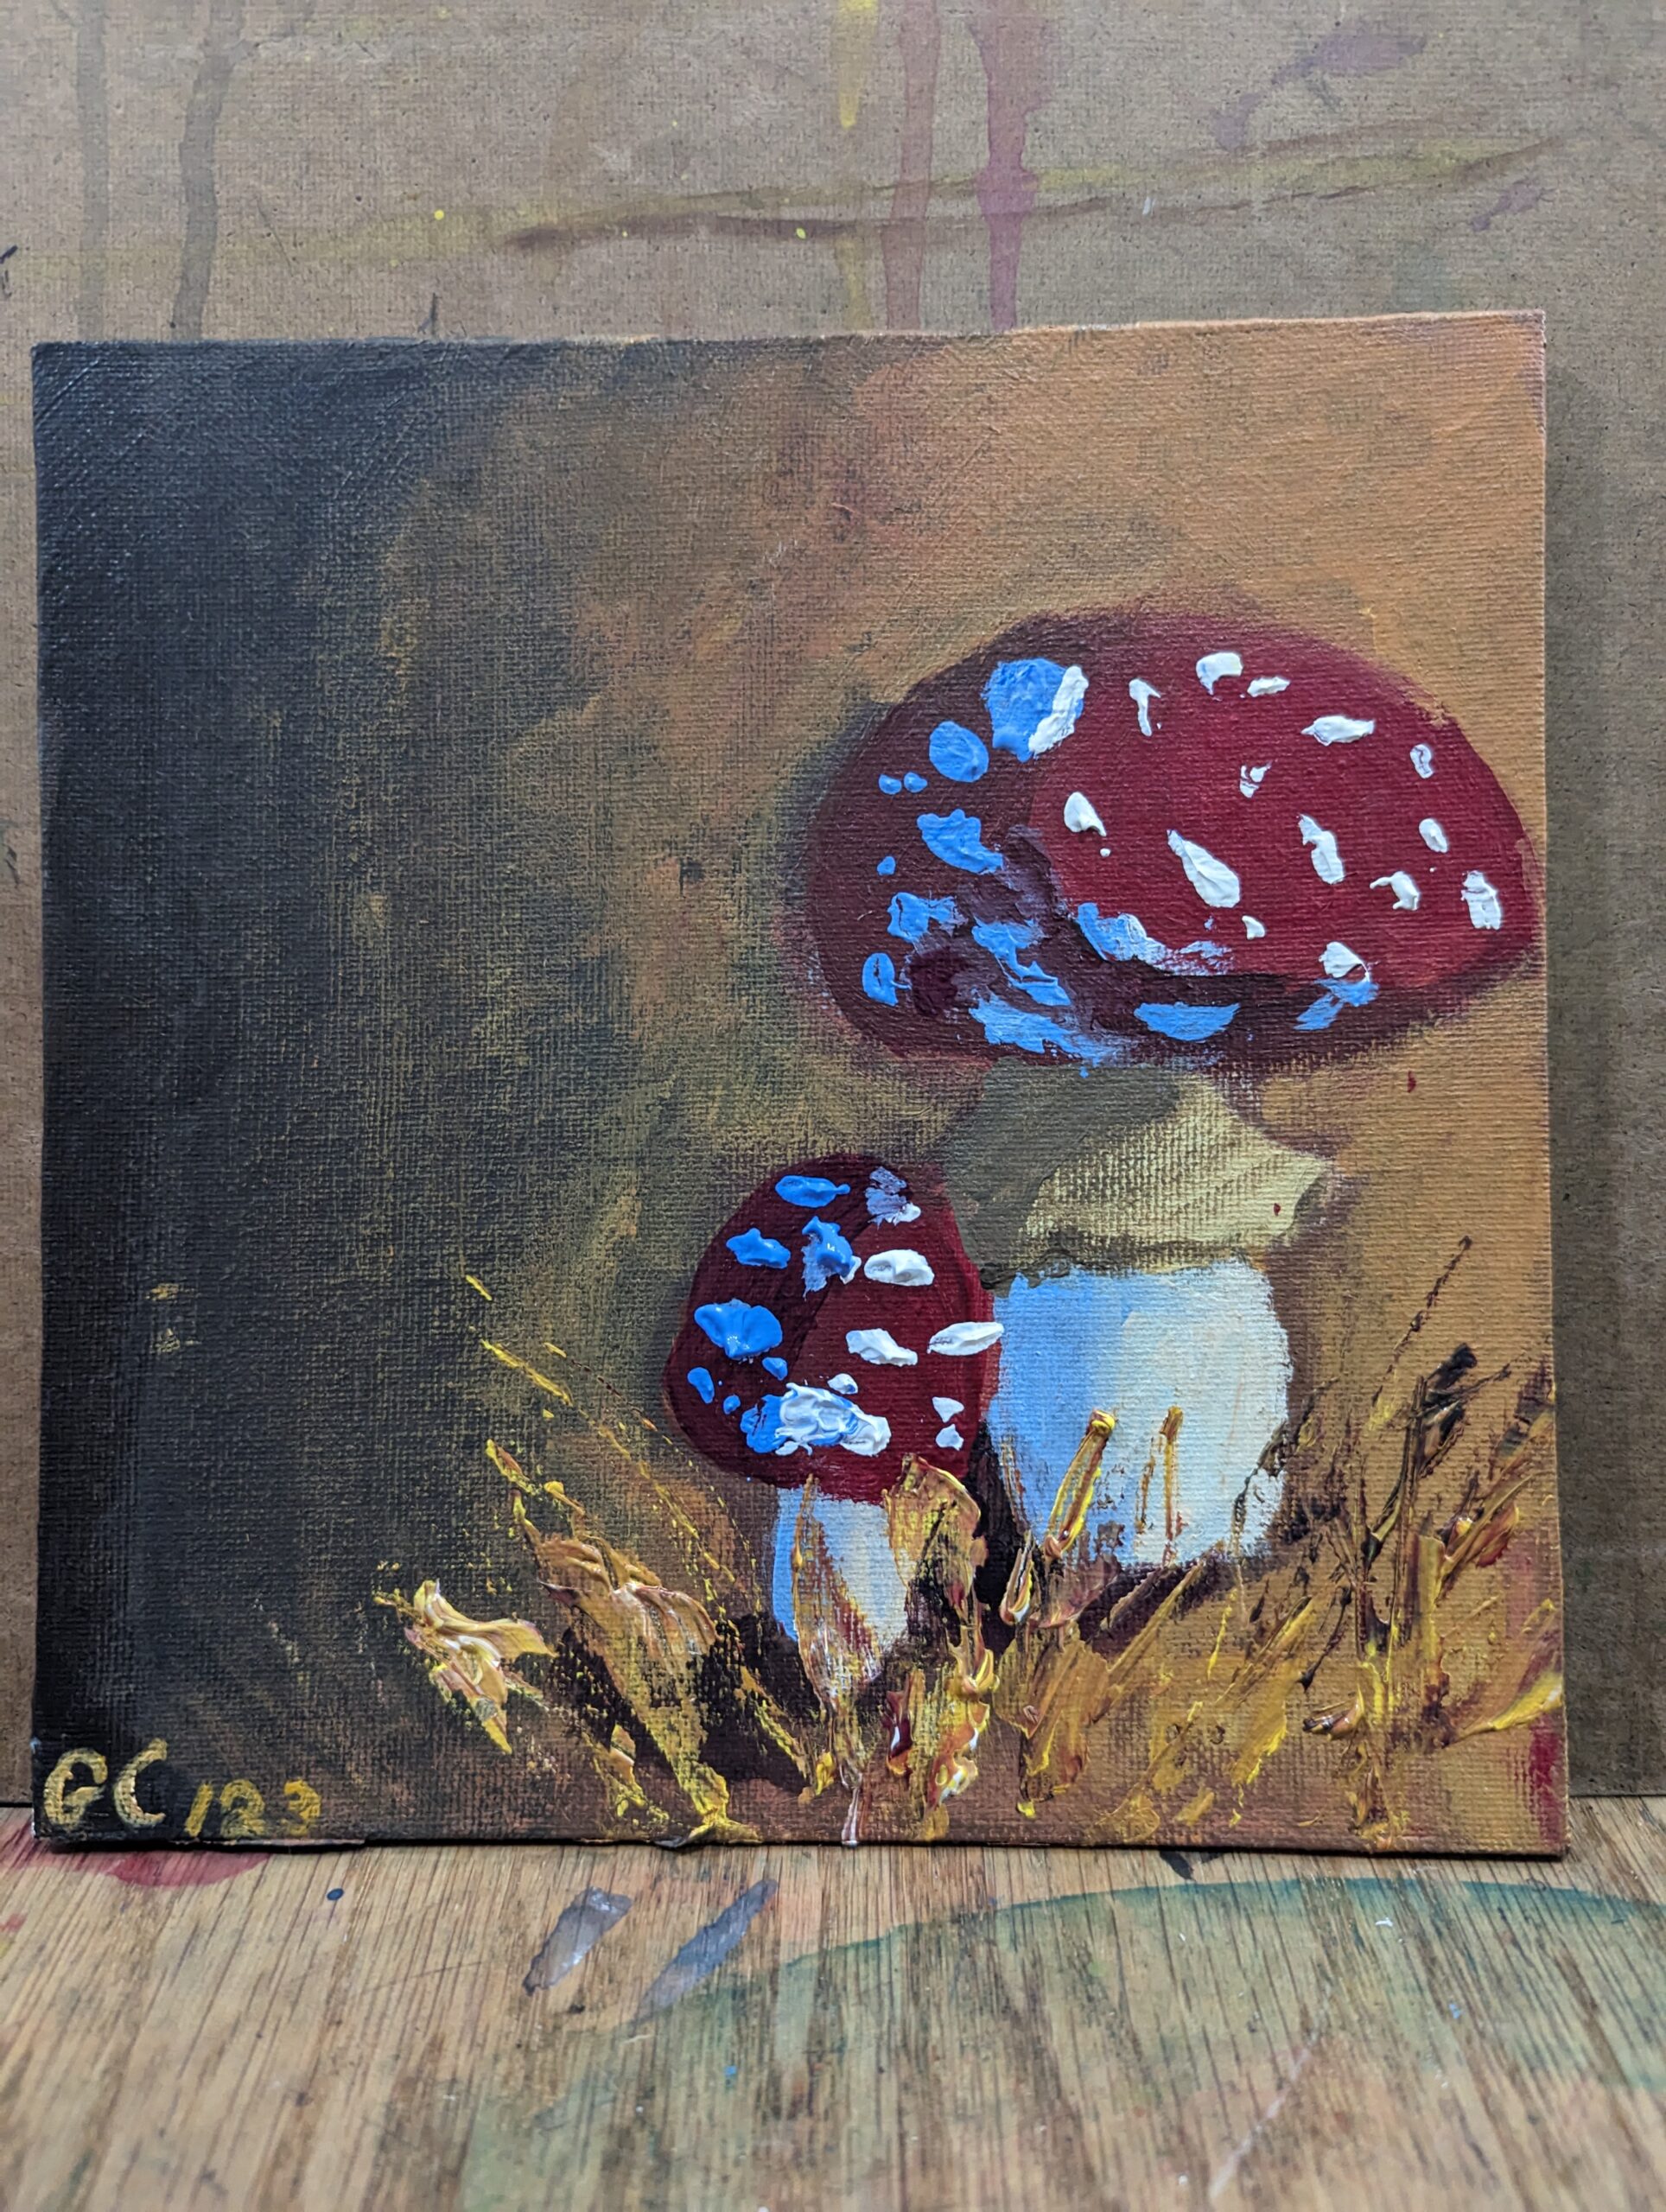 artwork of mushrooms